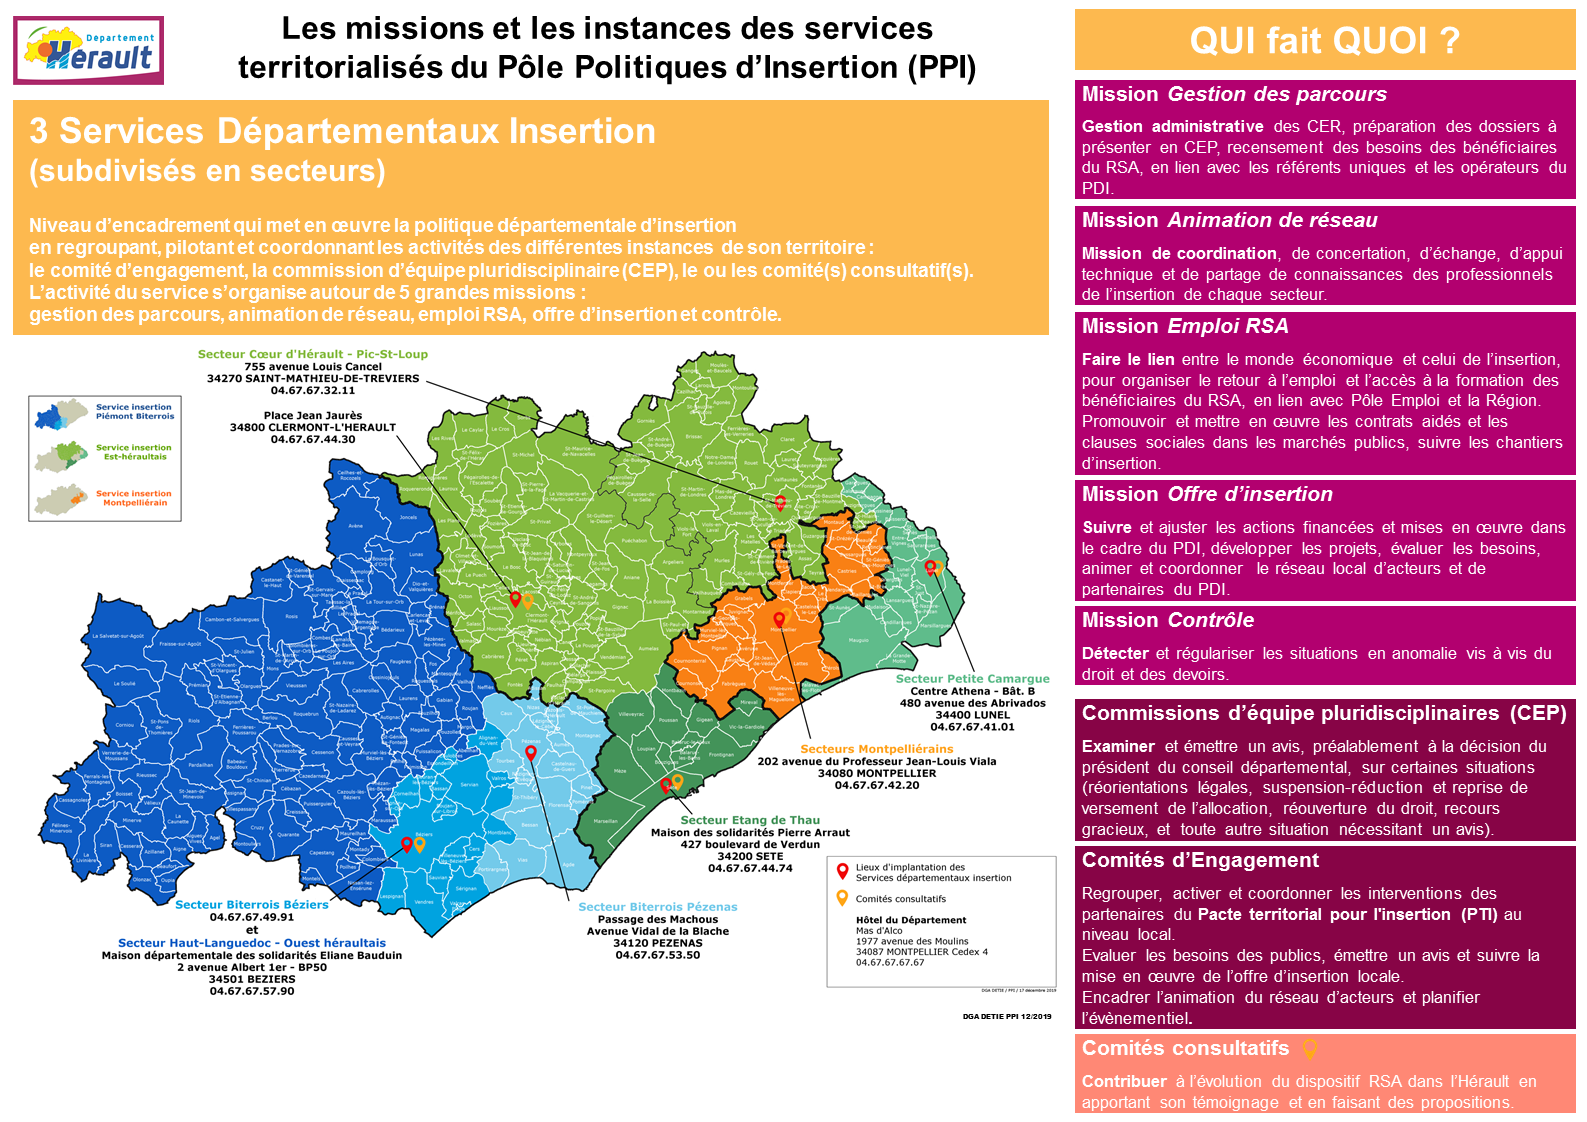 L’organisation territoriale de l’insertion dans l’Hérault et les missions réalisées